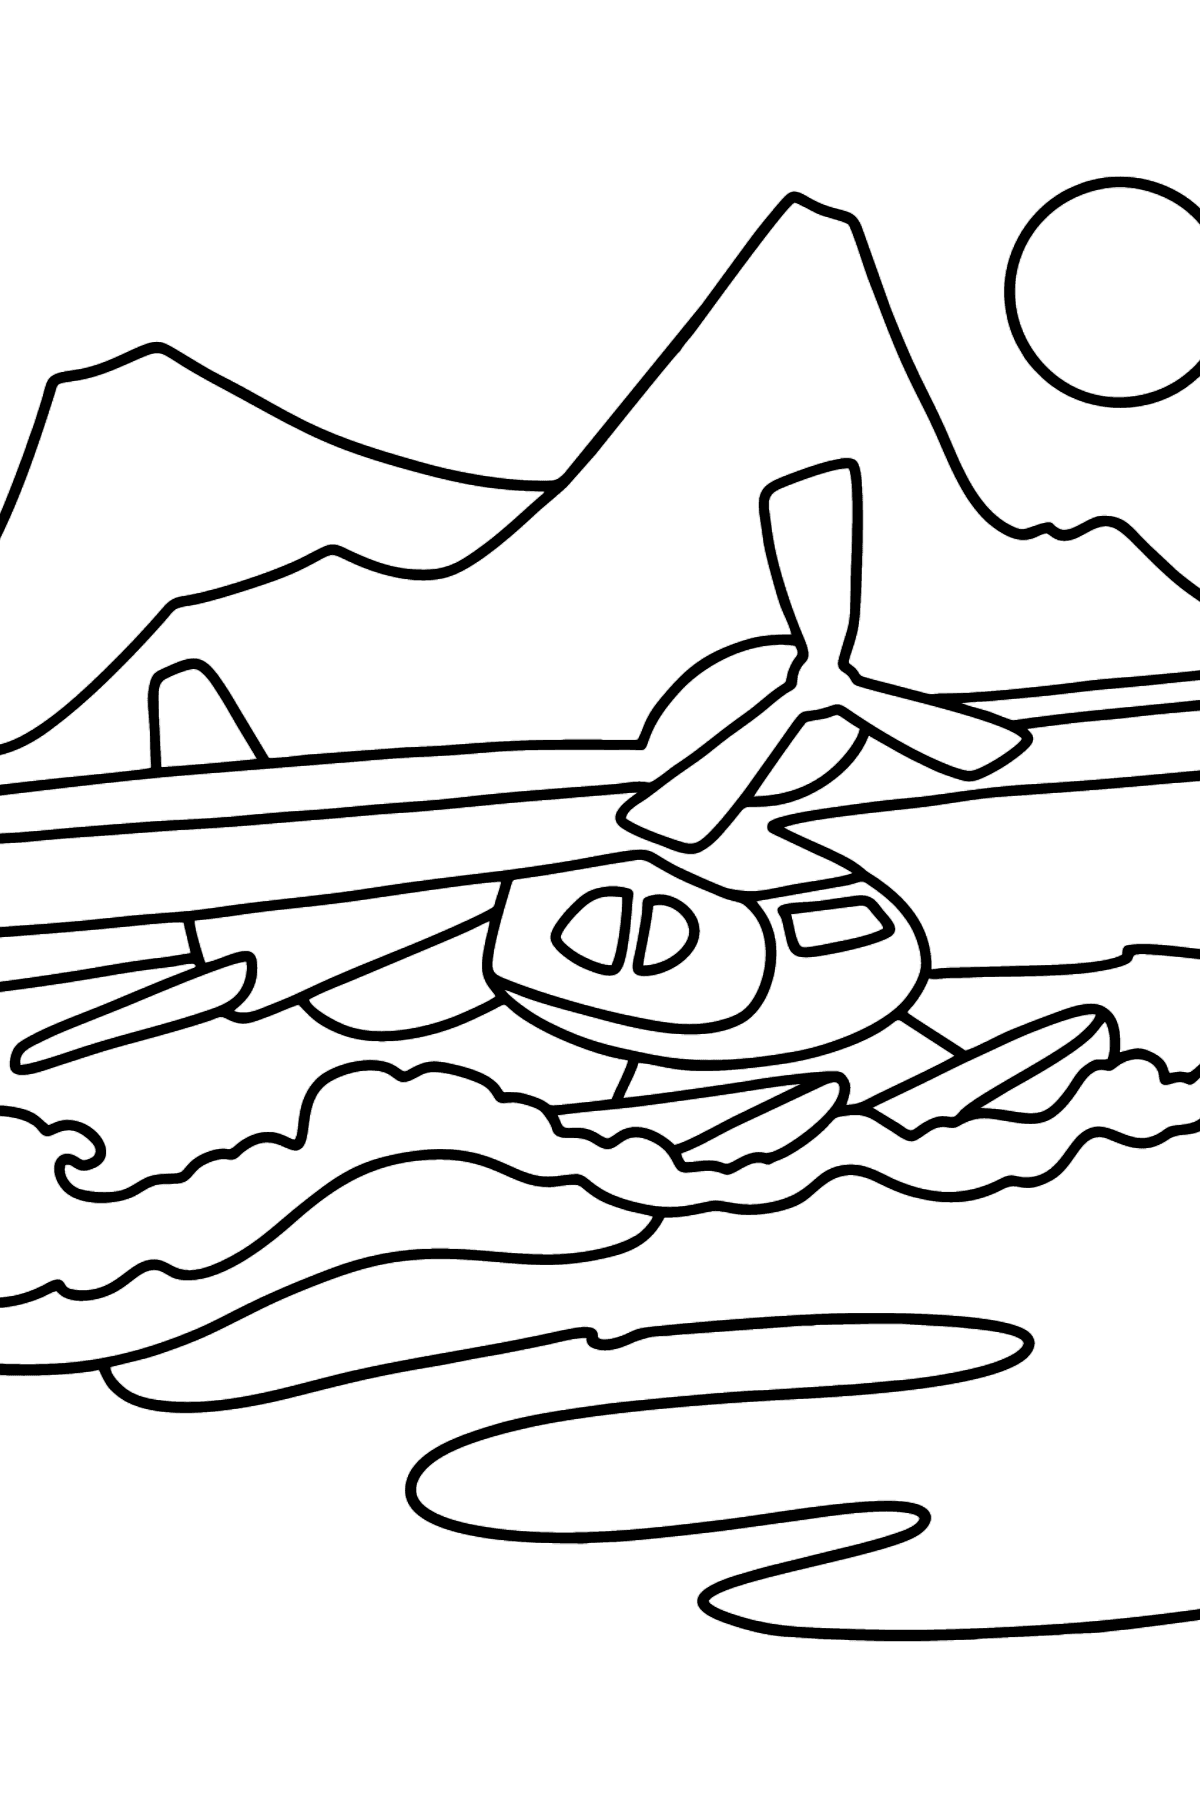 Boyama sayfası küçük deniz uçağı - Boyamalar çocuklar için